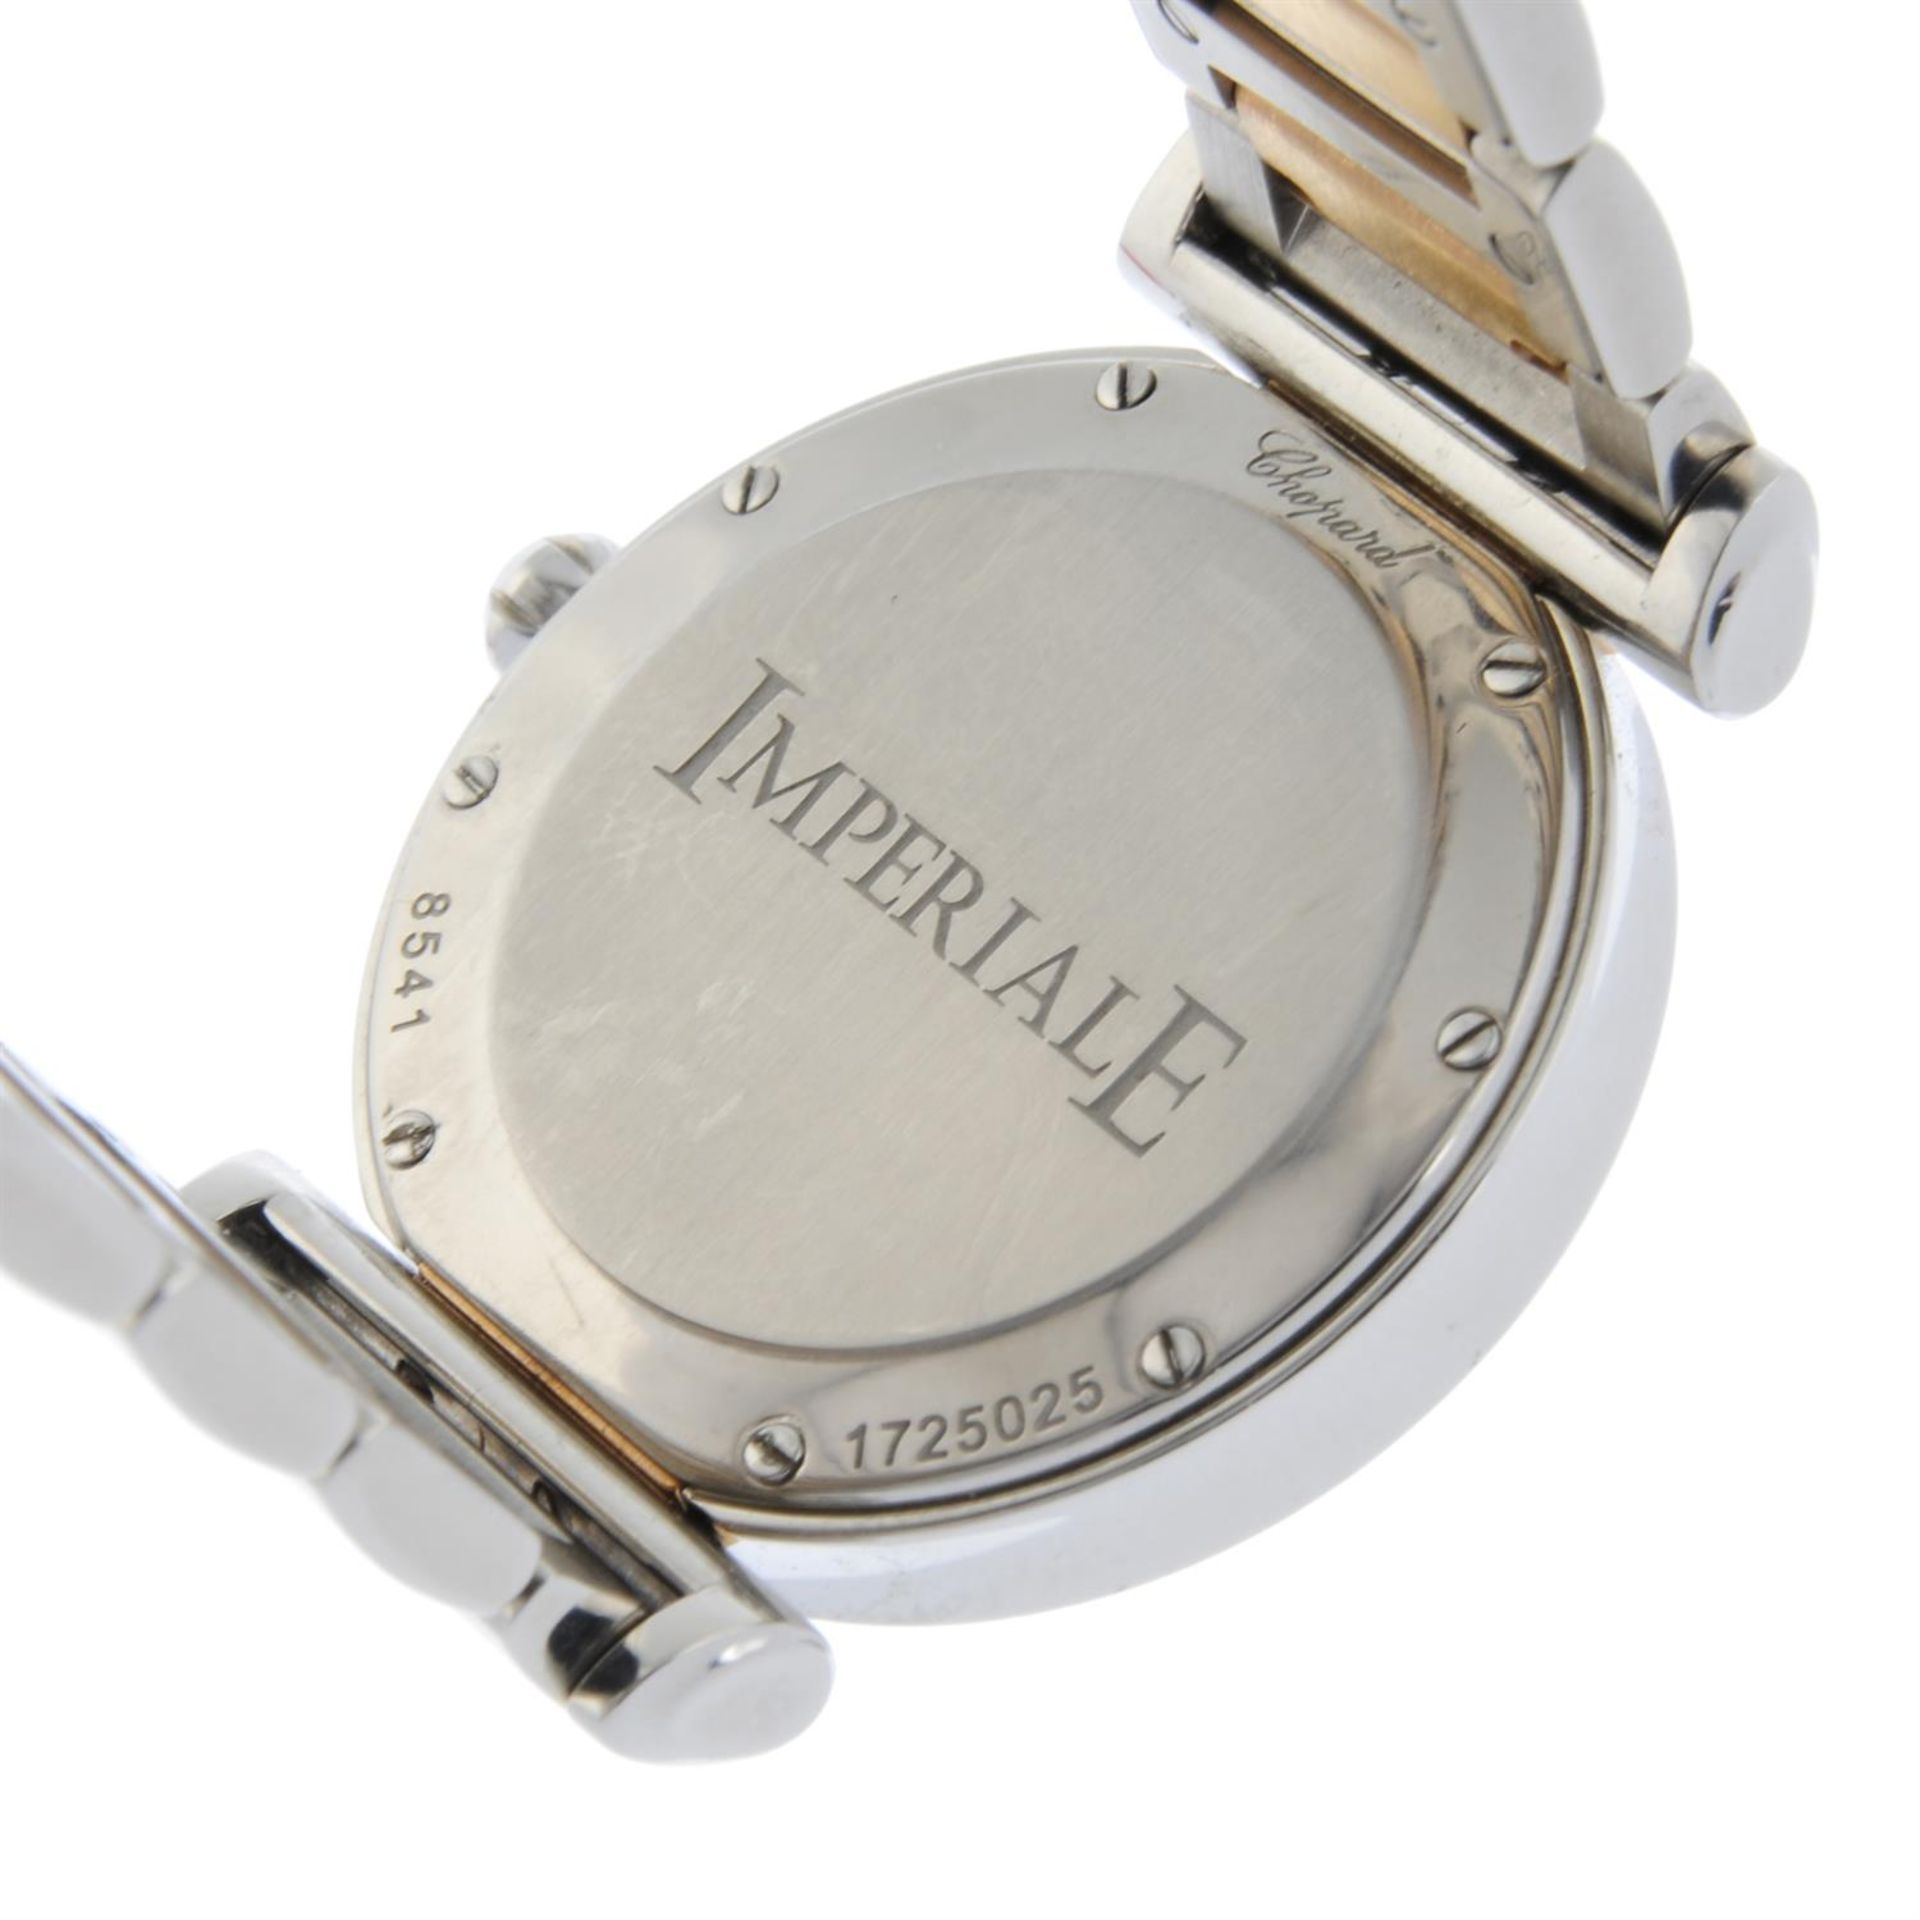 CHOPARD - a bi-metal Imperiale bracelet watch, 28mm. - Image 4 of 6